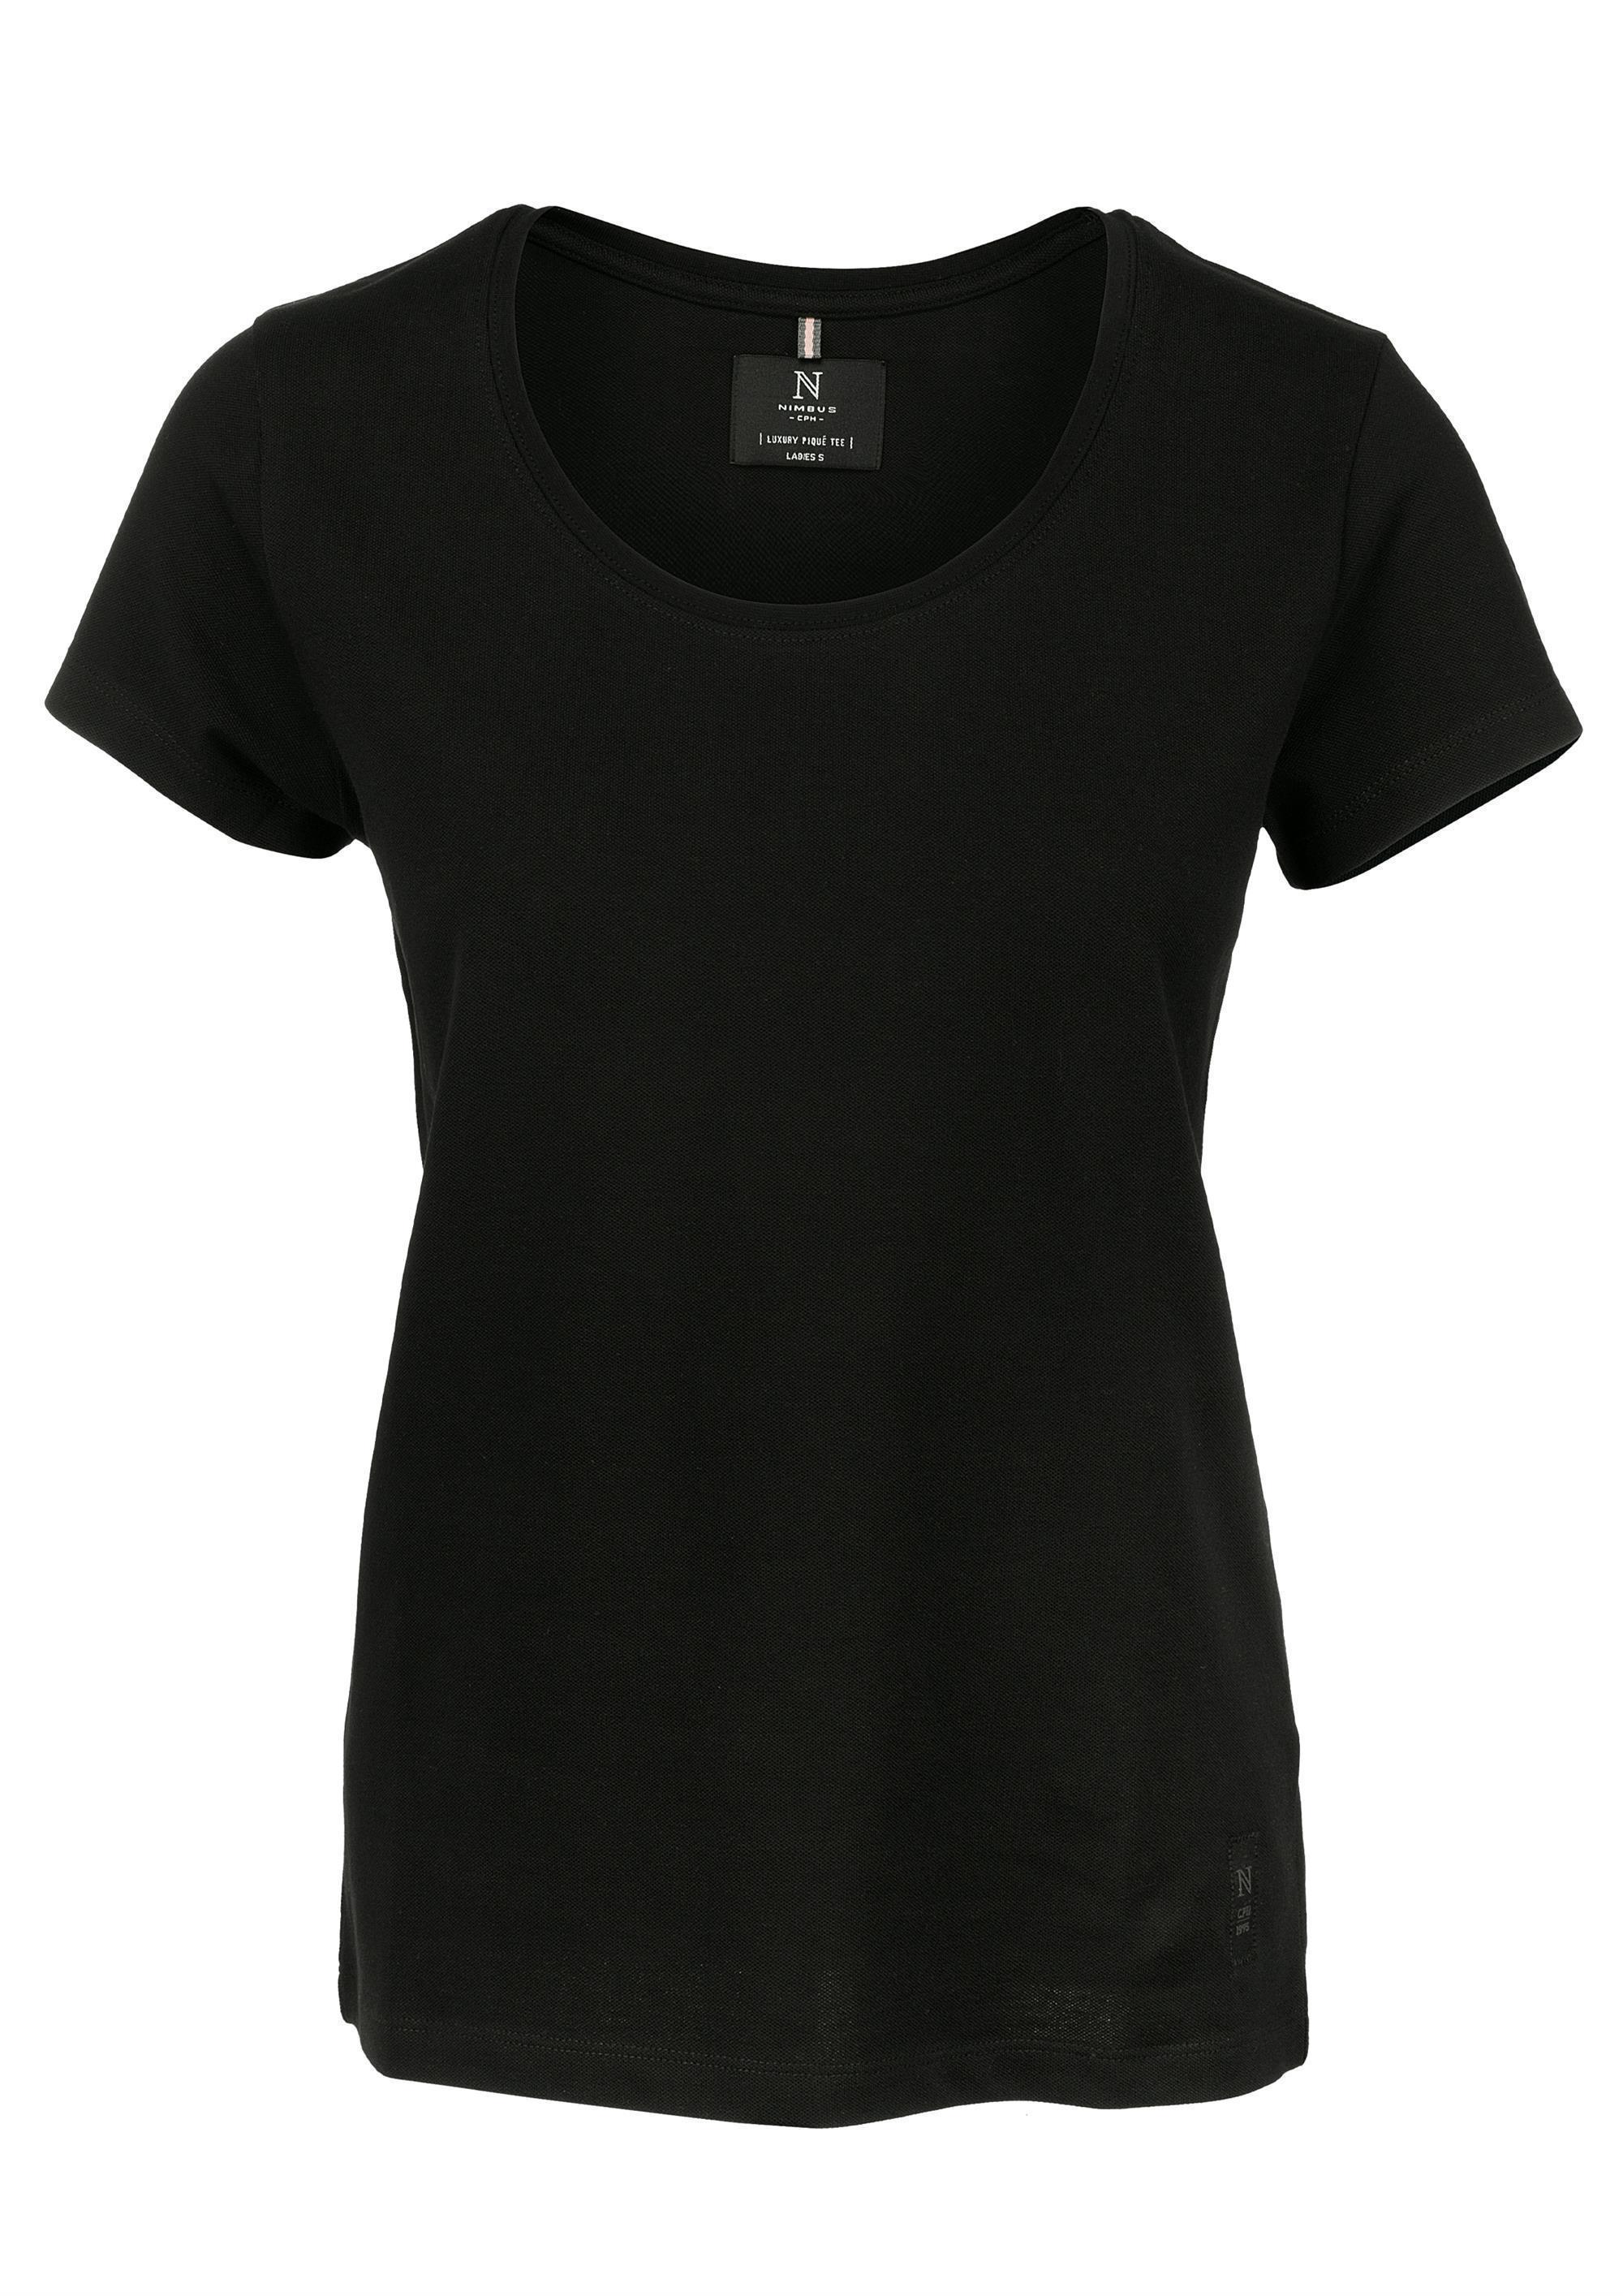 Ladies Organic Cotton Pique T-Shirt Danbury 230 g/m² Nimbus®